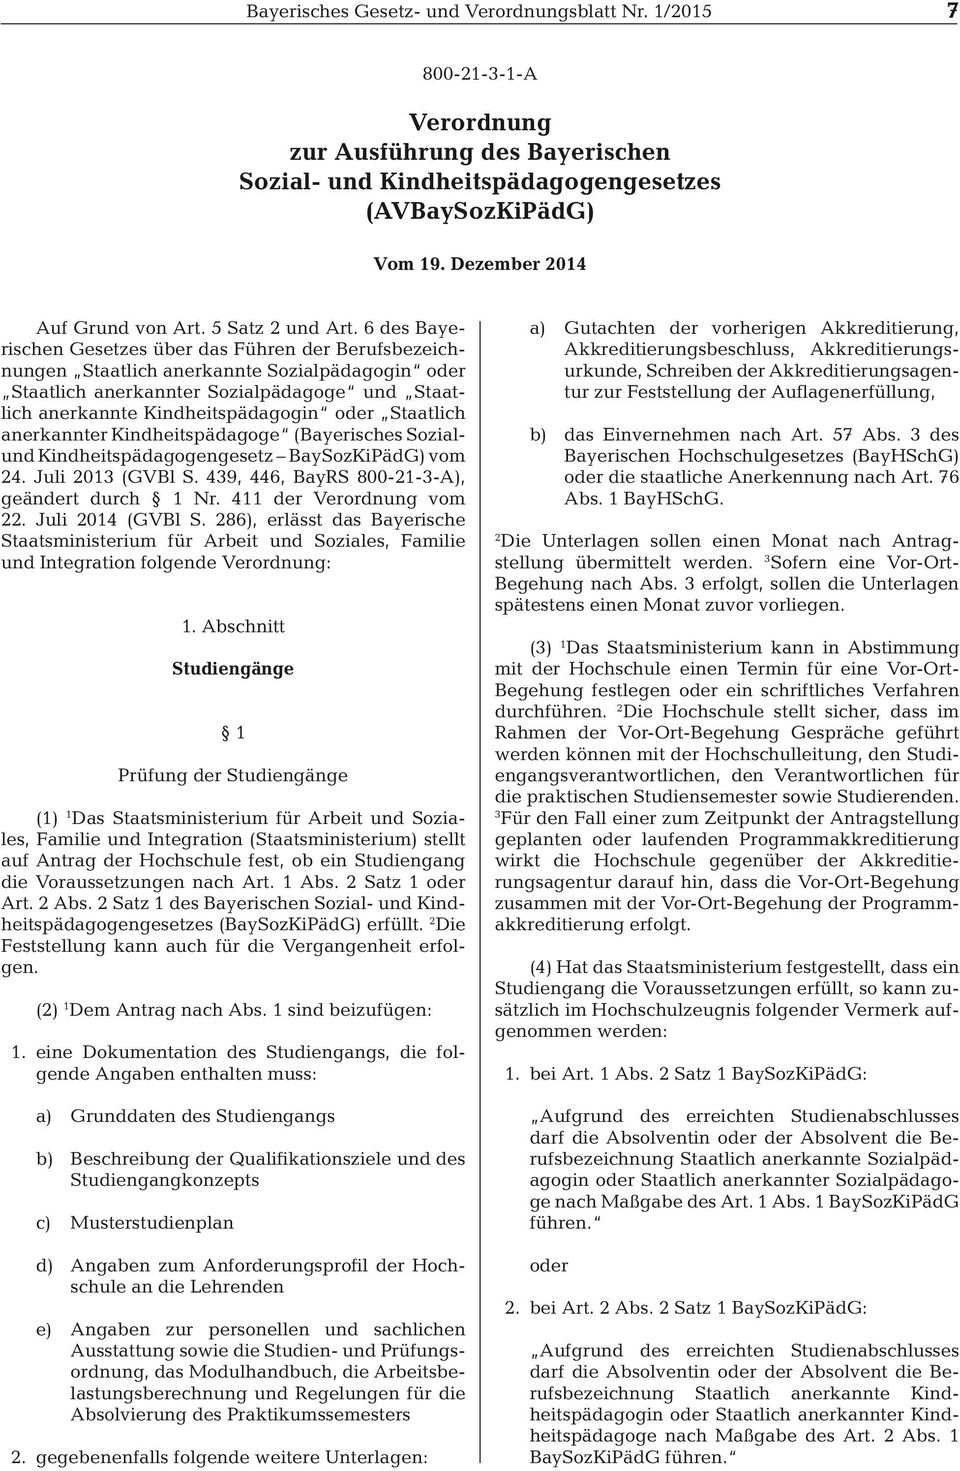 6 des Bayerischen Gesetzes über das Führen der Berufsbezeichnungen Staatlich anerkannte Sozialpädagogin oder Staatlich anerkannter Sozialpädagoge und Staatlich anerkannte Kindheitspädagogin oder